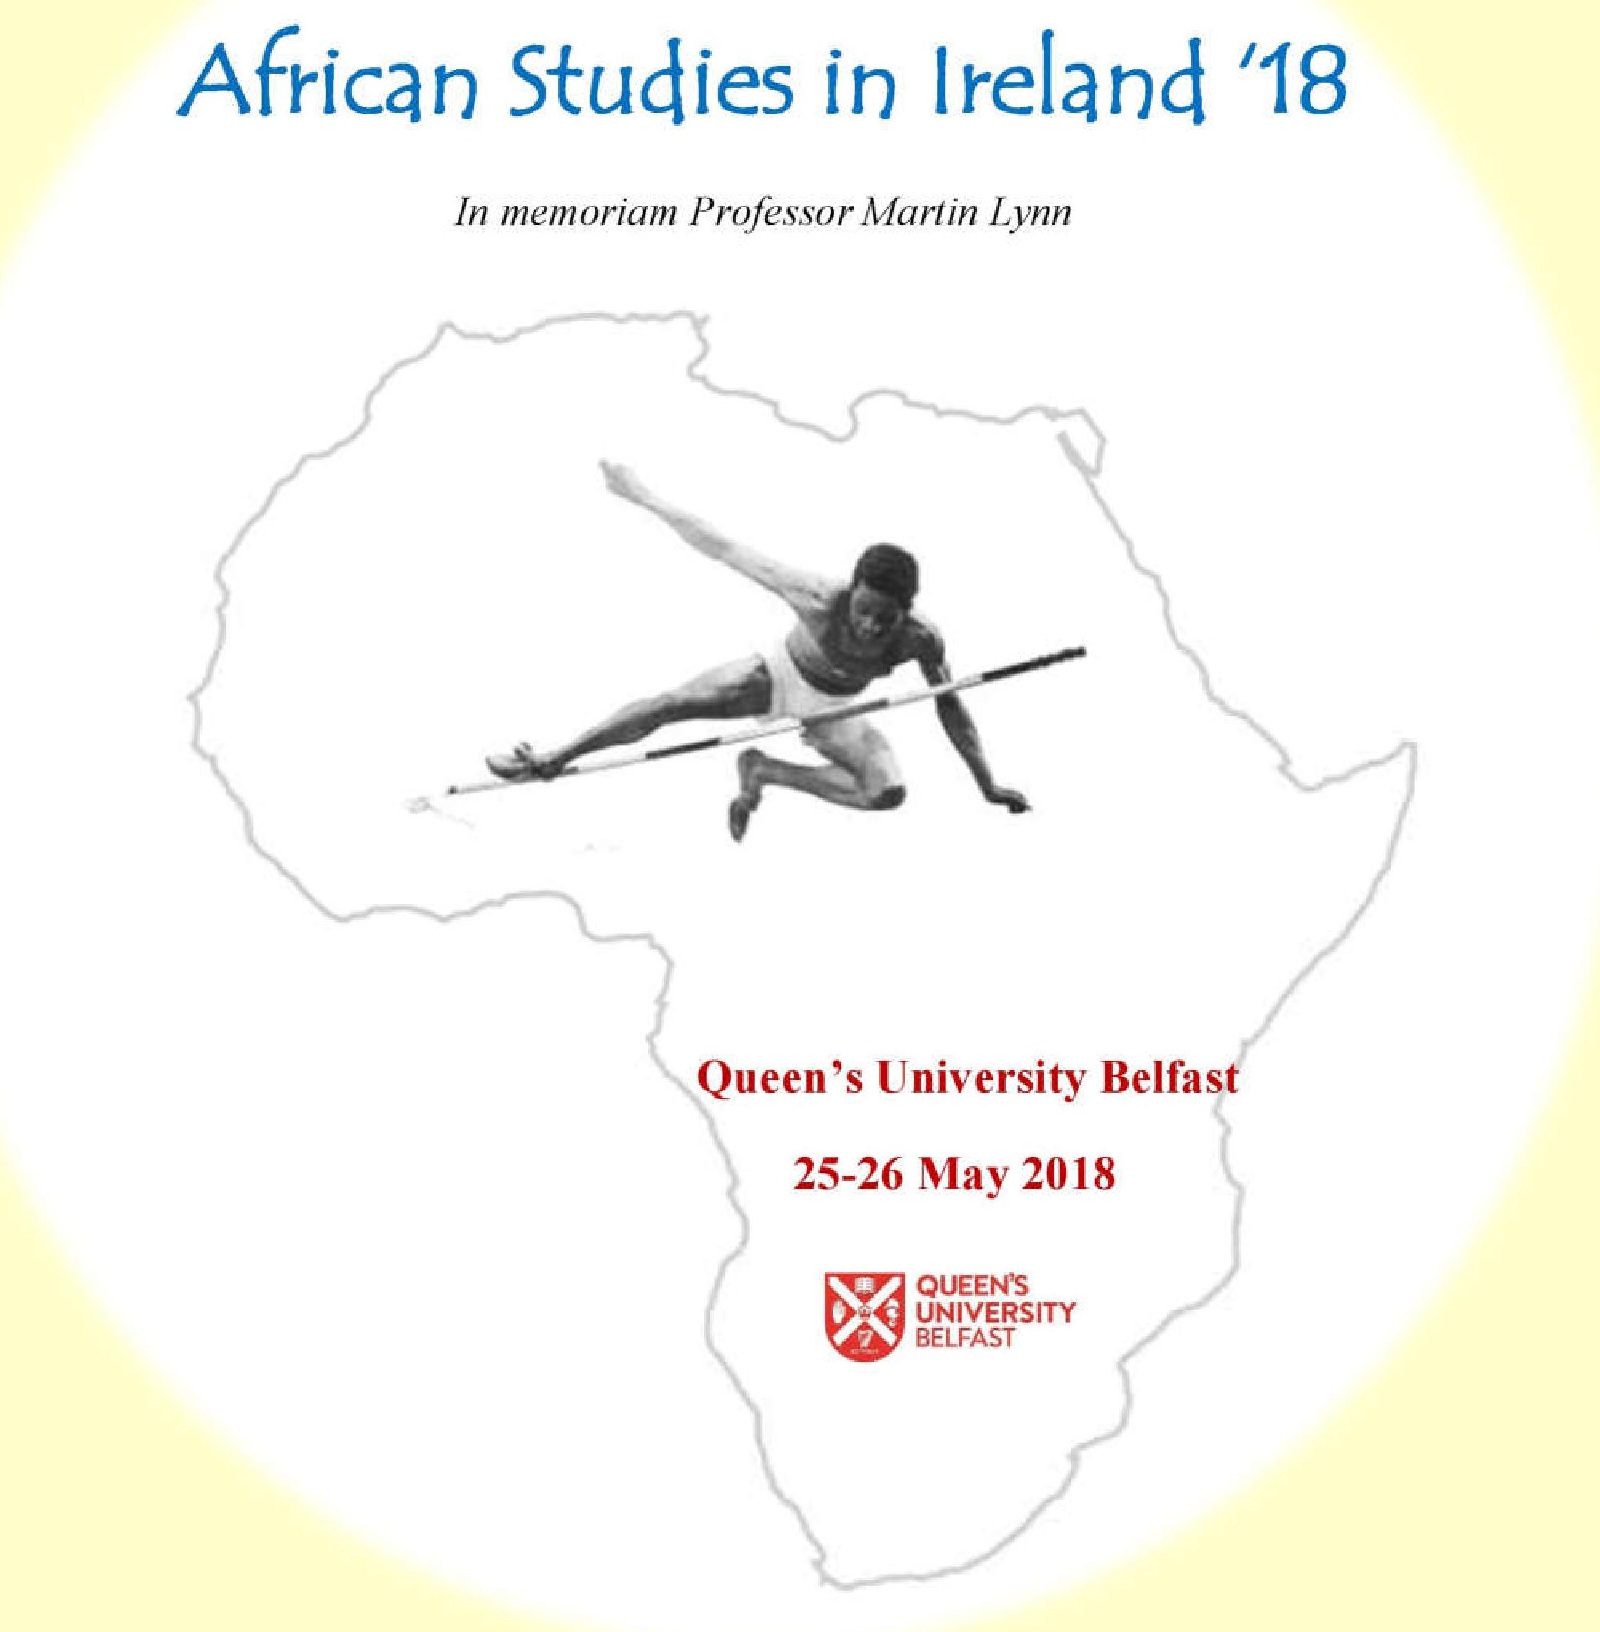 African Studies in Ireland 2018